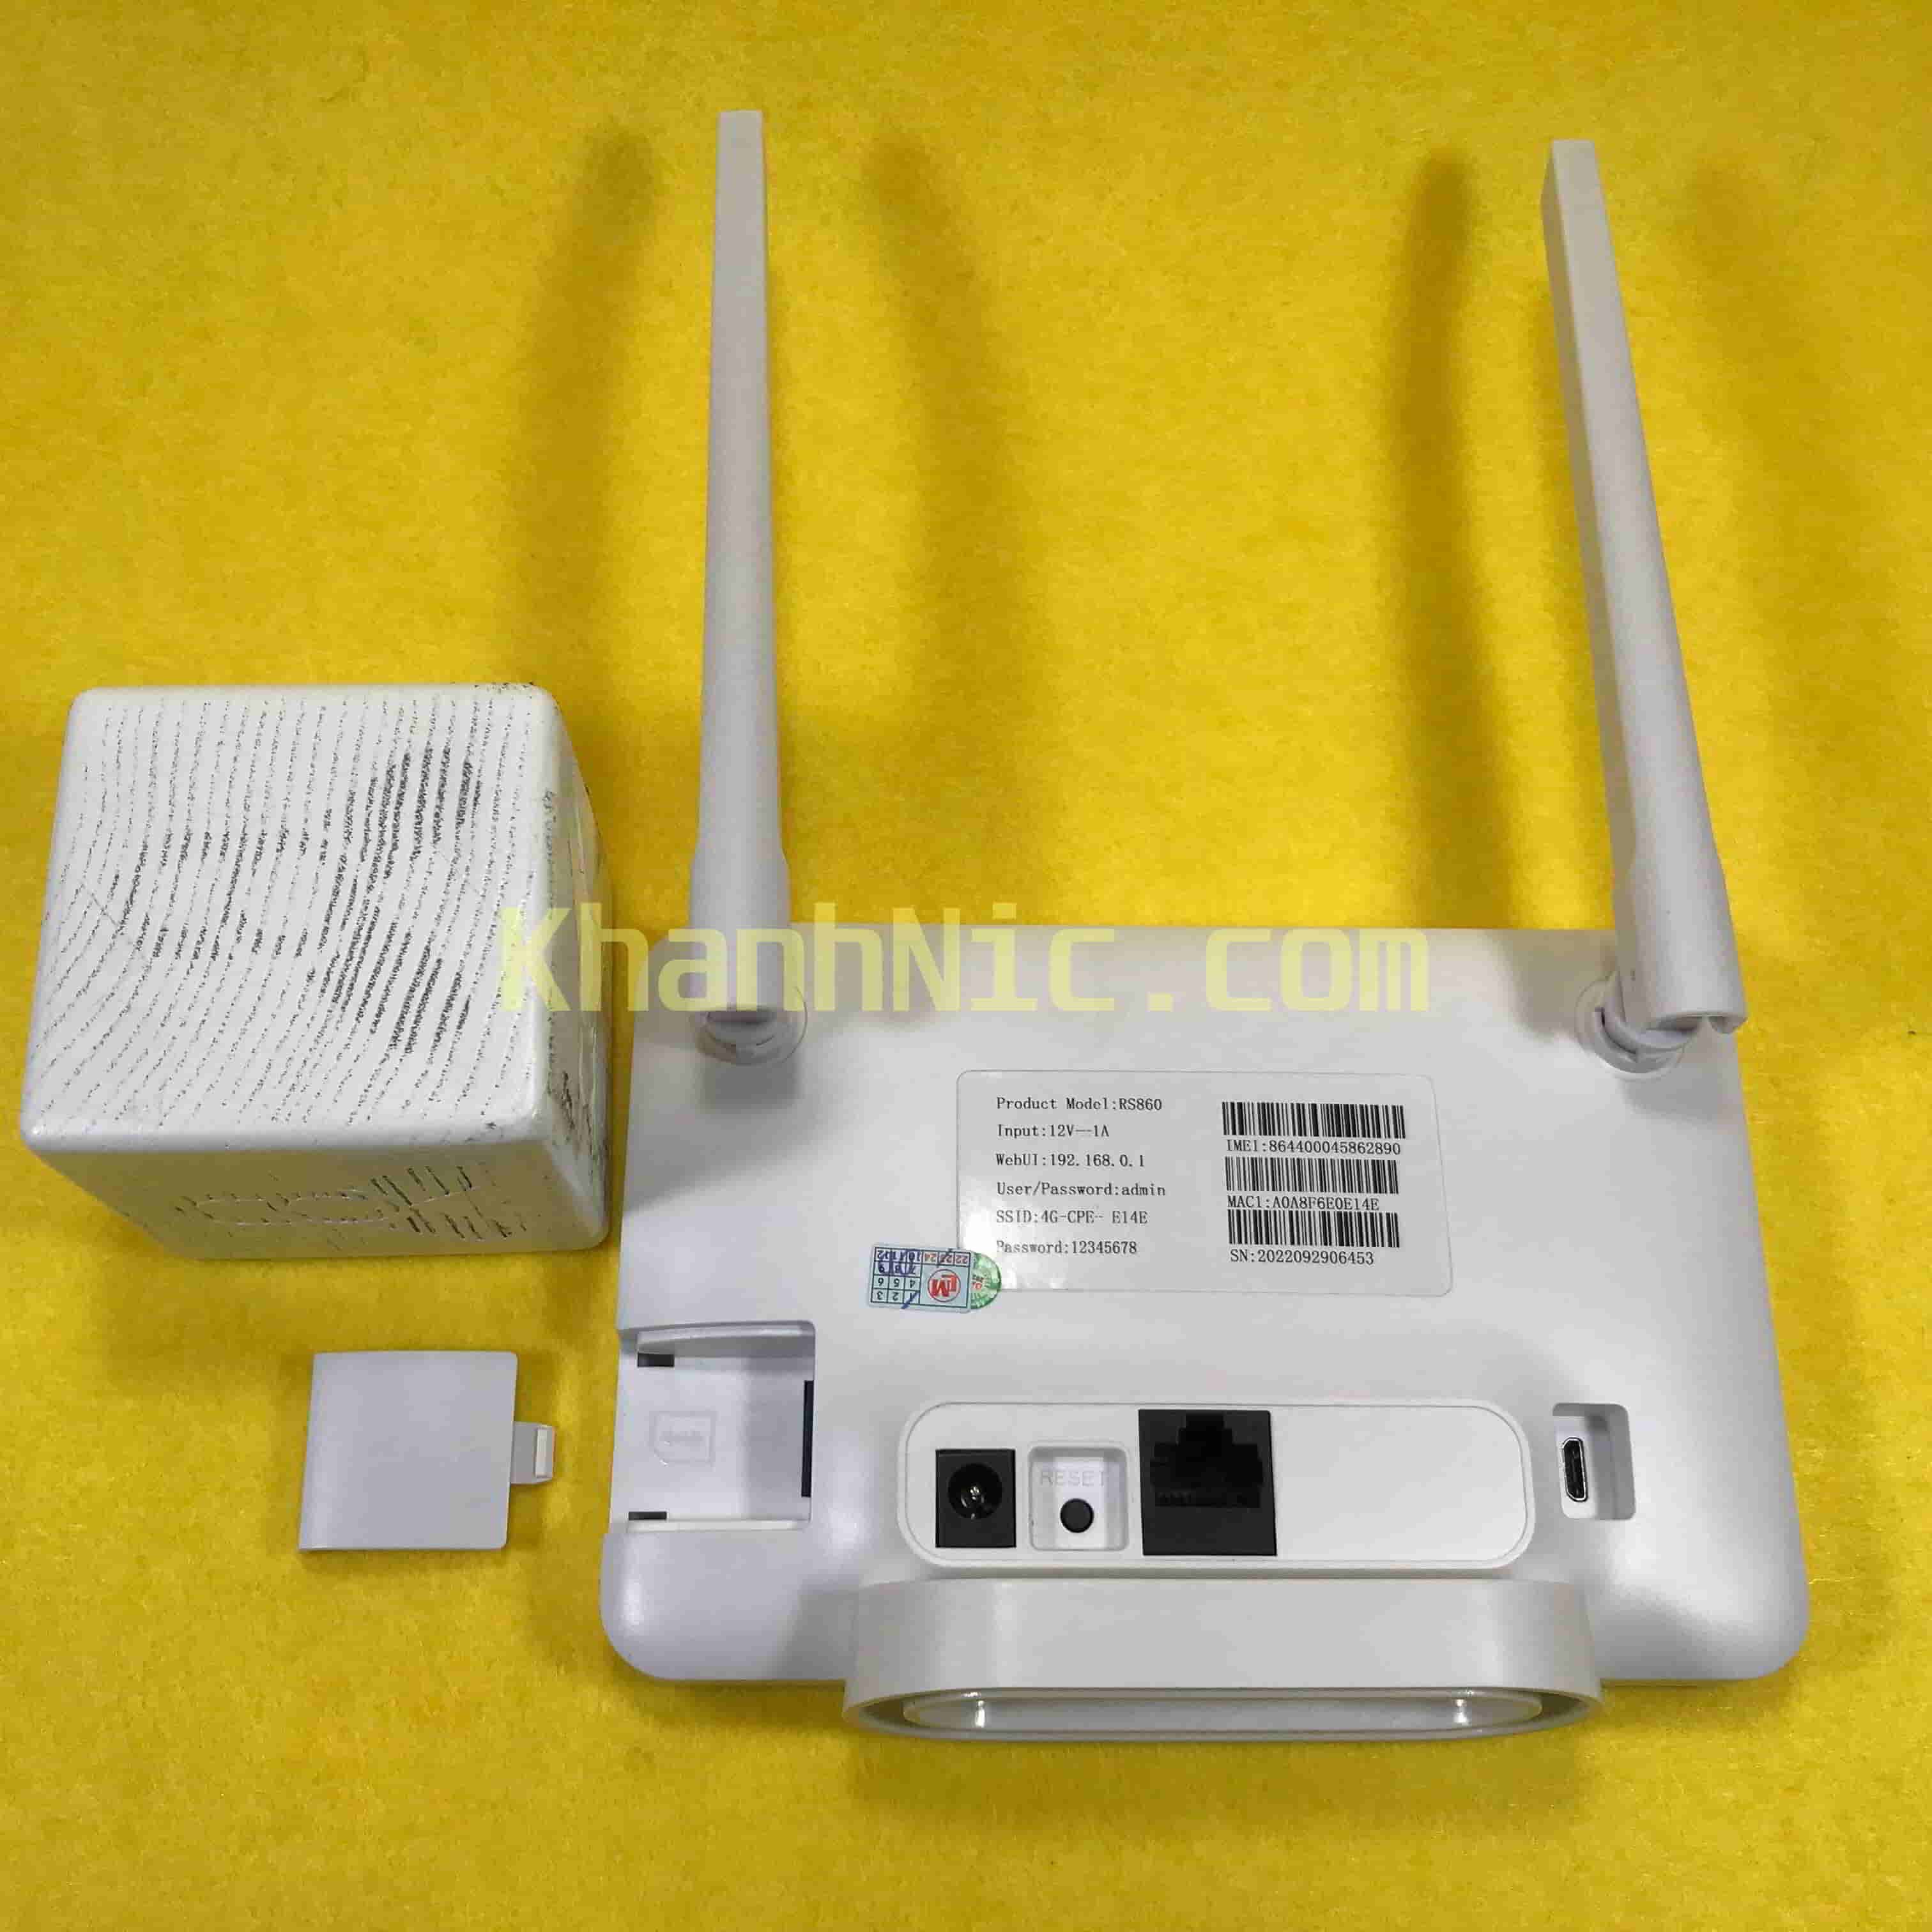 Cục phát wifi 4G LTE có cổng Lan CPE RS860 - 32 NGƯỜI DÙNG CÙNG LÚC